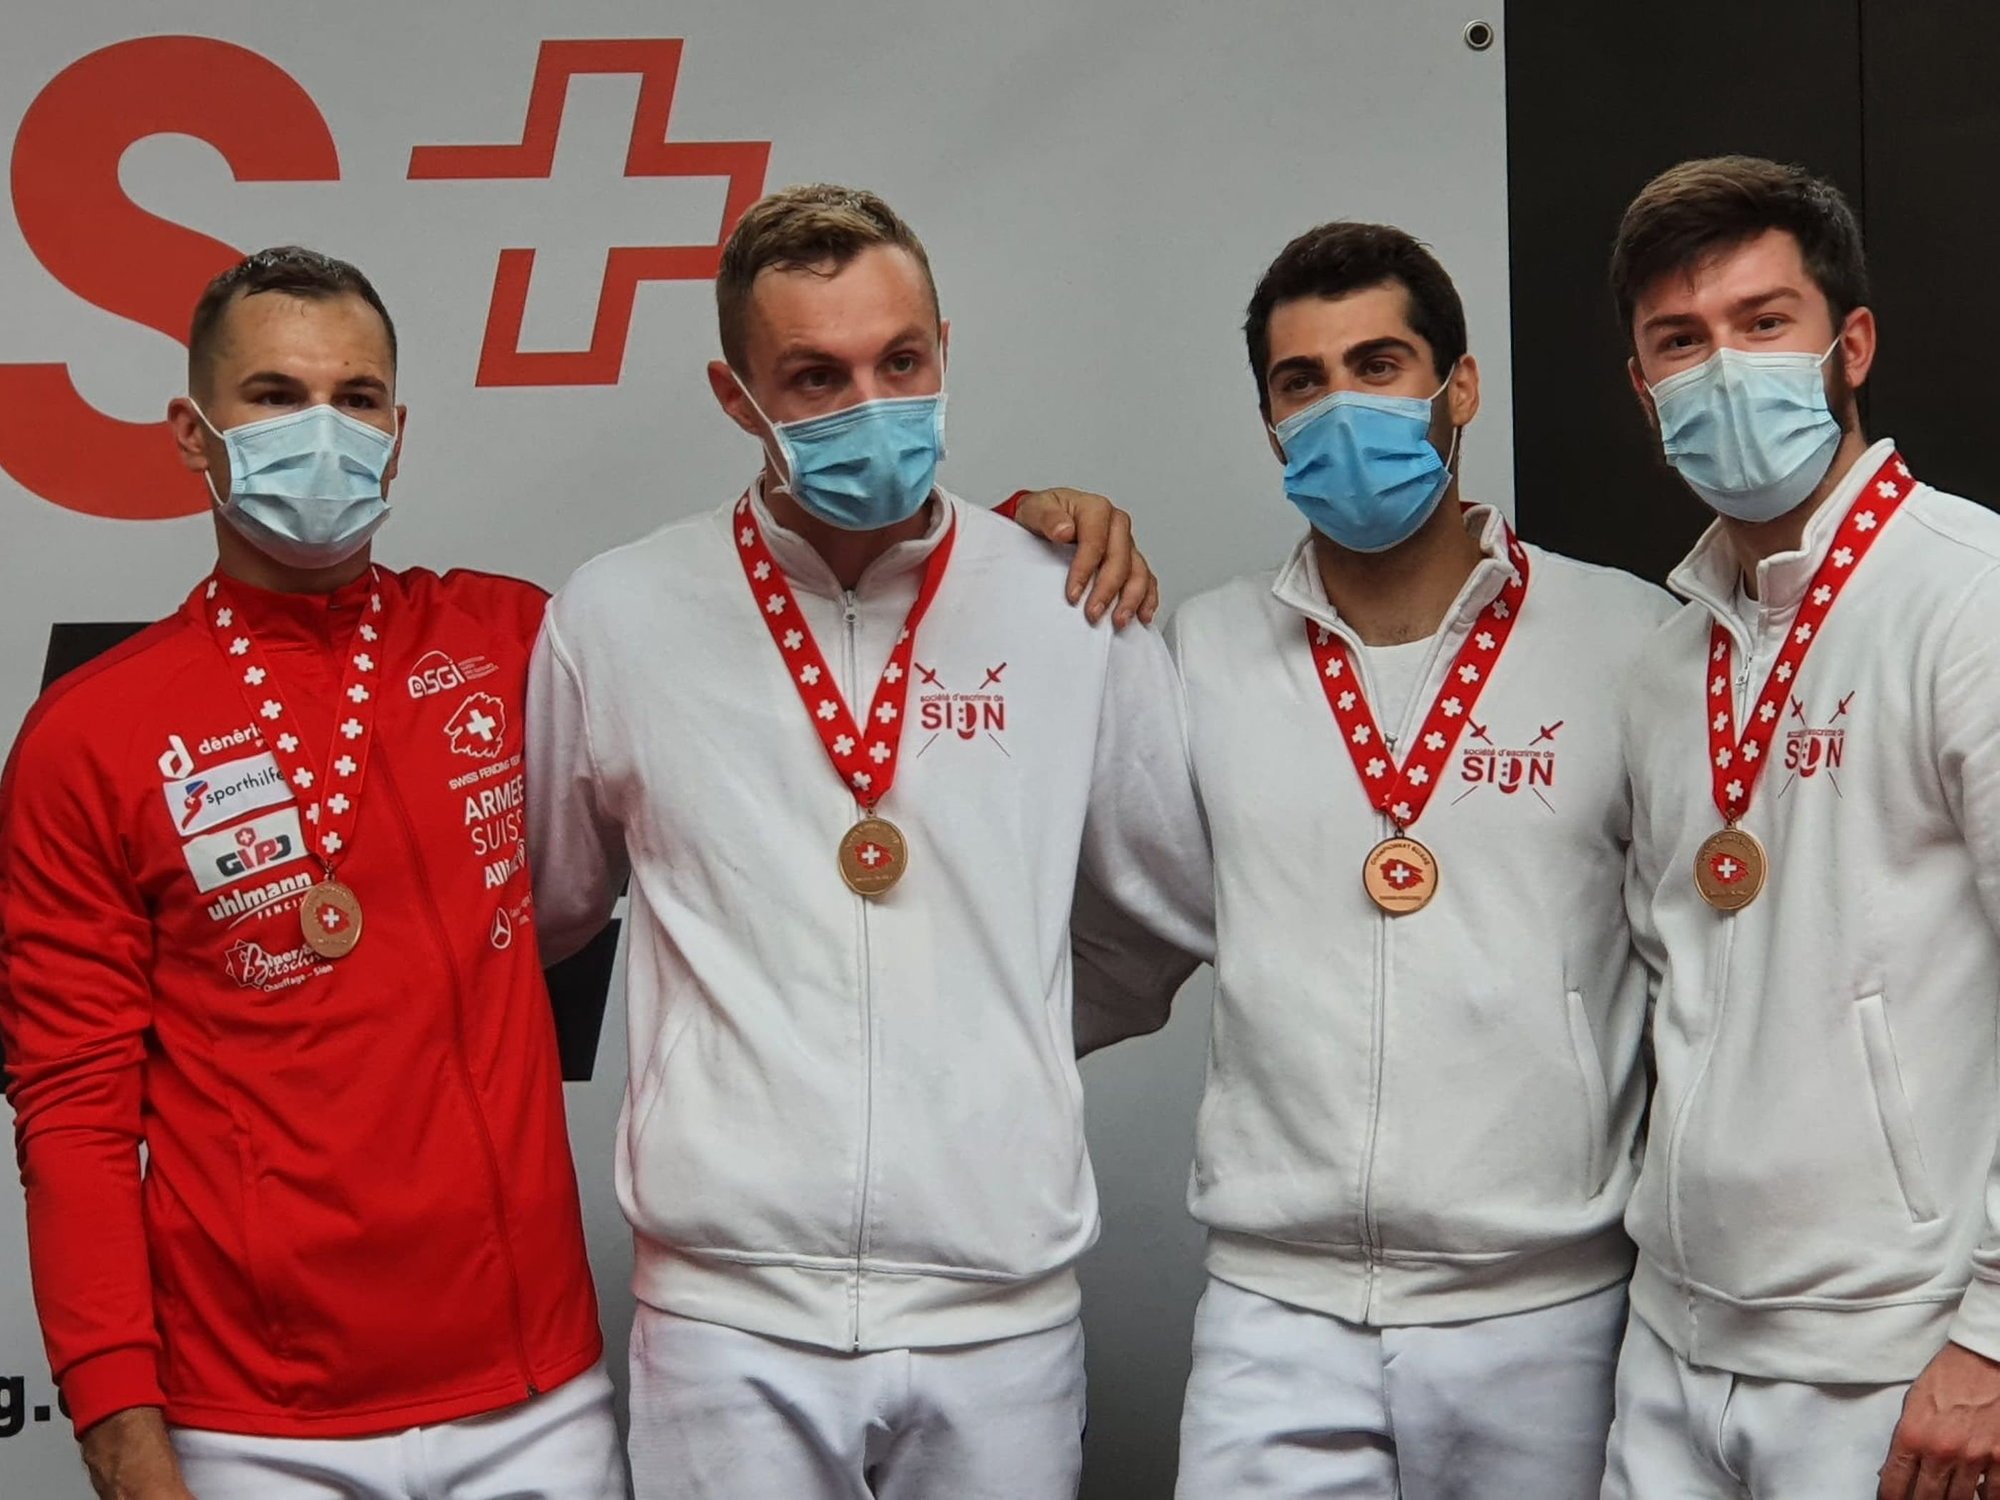 Lucas Malcotti, Clément Métrailler, Alexis Bayard et Stefan Cerruti ont terminé troisièmes par équipes, le lendemain de la victoire d'Alexis Bayard en individuel.